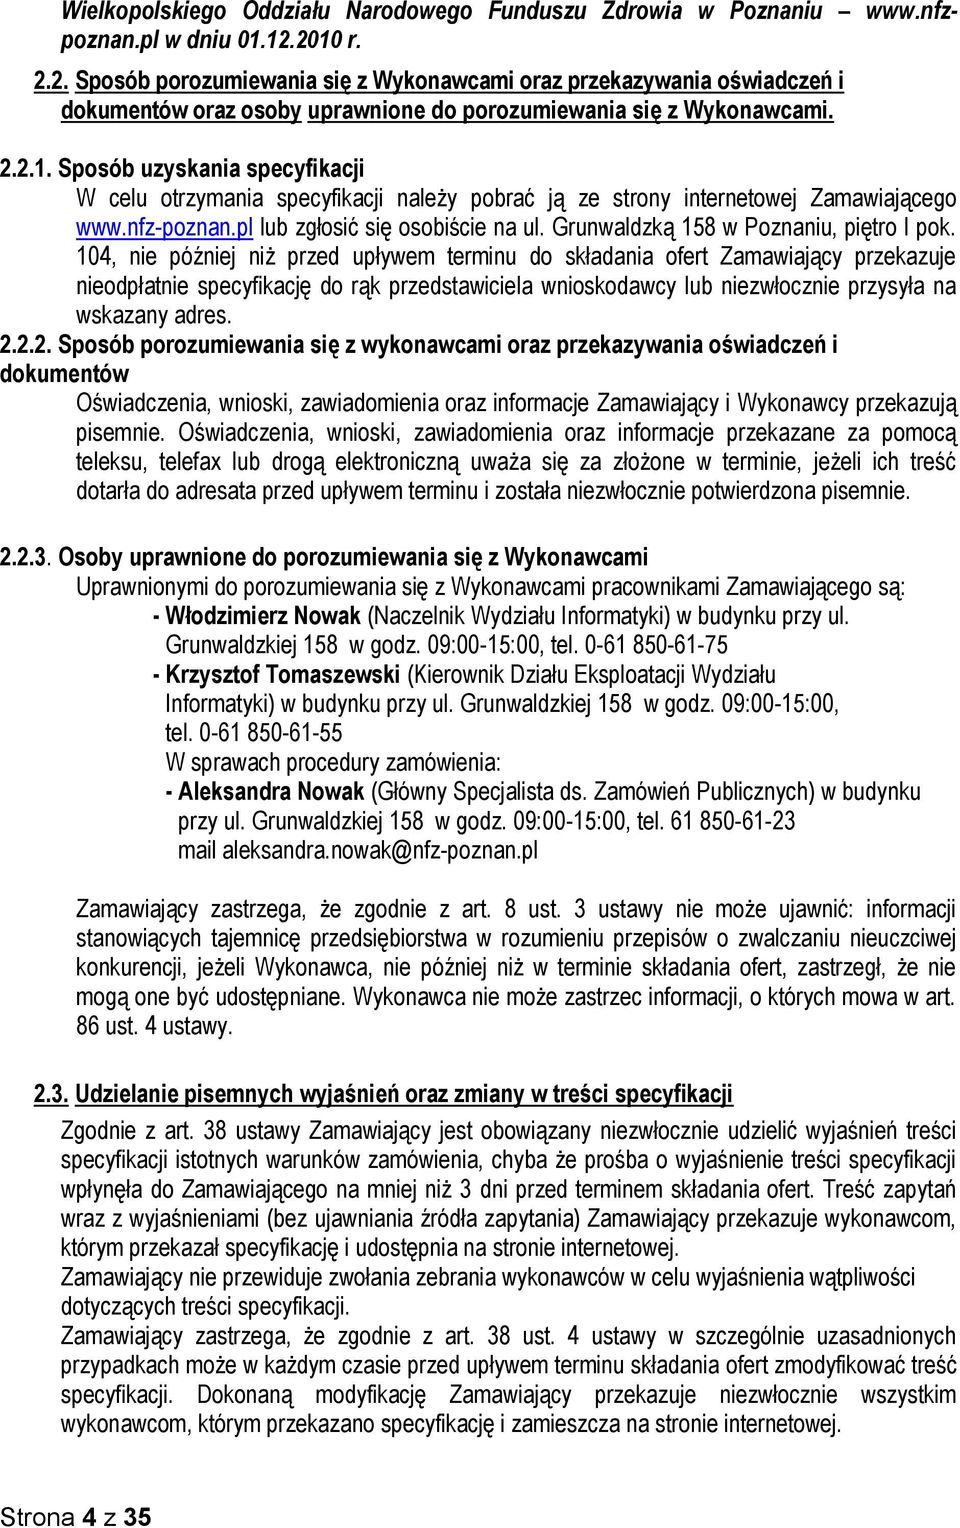 nfz-poznan.pl lub zgłosić się osobiście na ul. Grunwaldzką 158 w Poznaniu, piętro I pok.